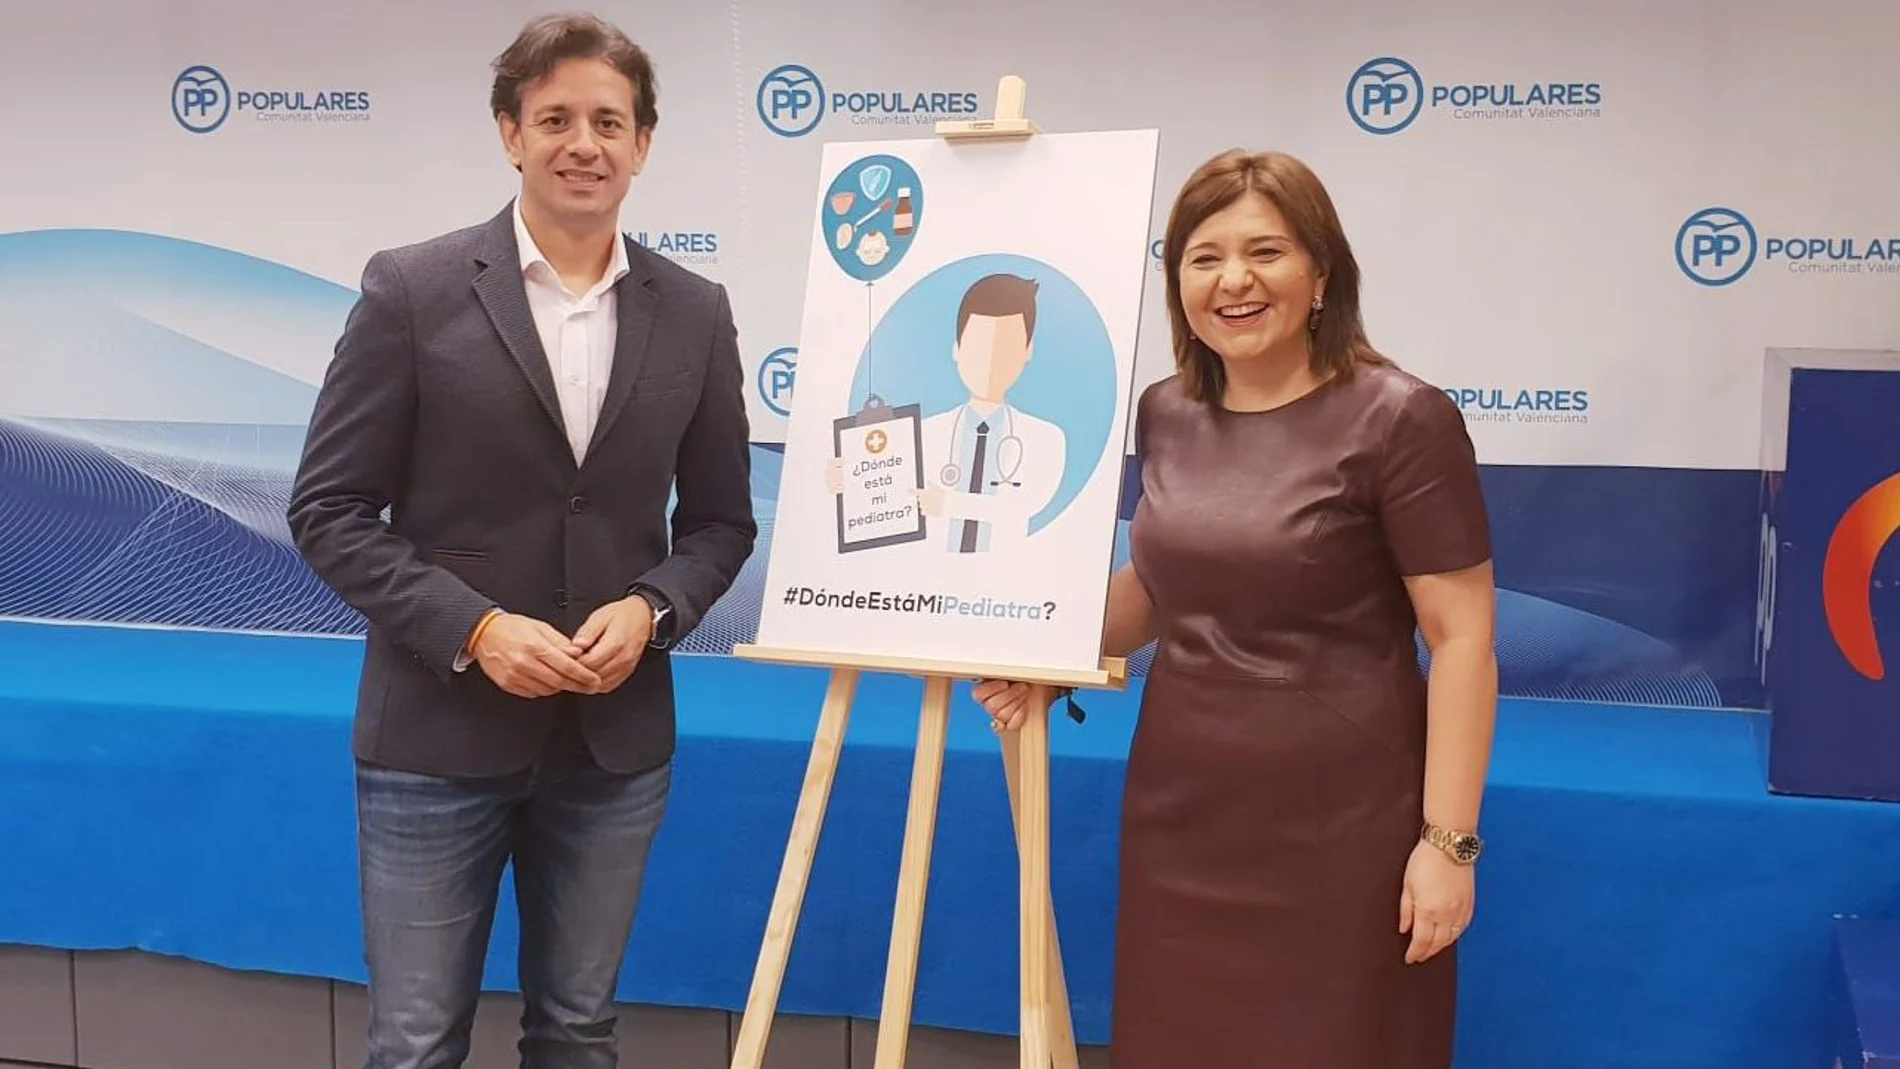 La presidenta del PPCV, Isabel Bonig, junto al portavoz de Sanidad, Juan José Zaplana, presentan la campaña, ¿Dónde está mi pediatra?